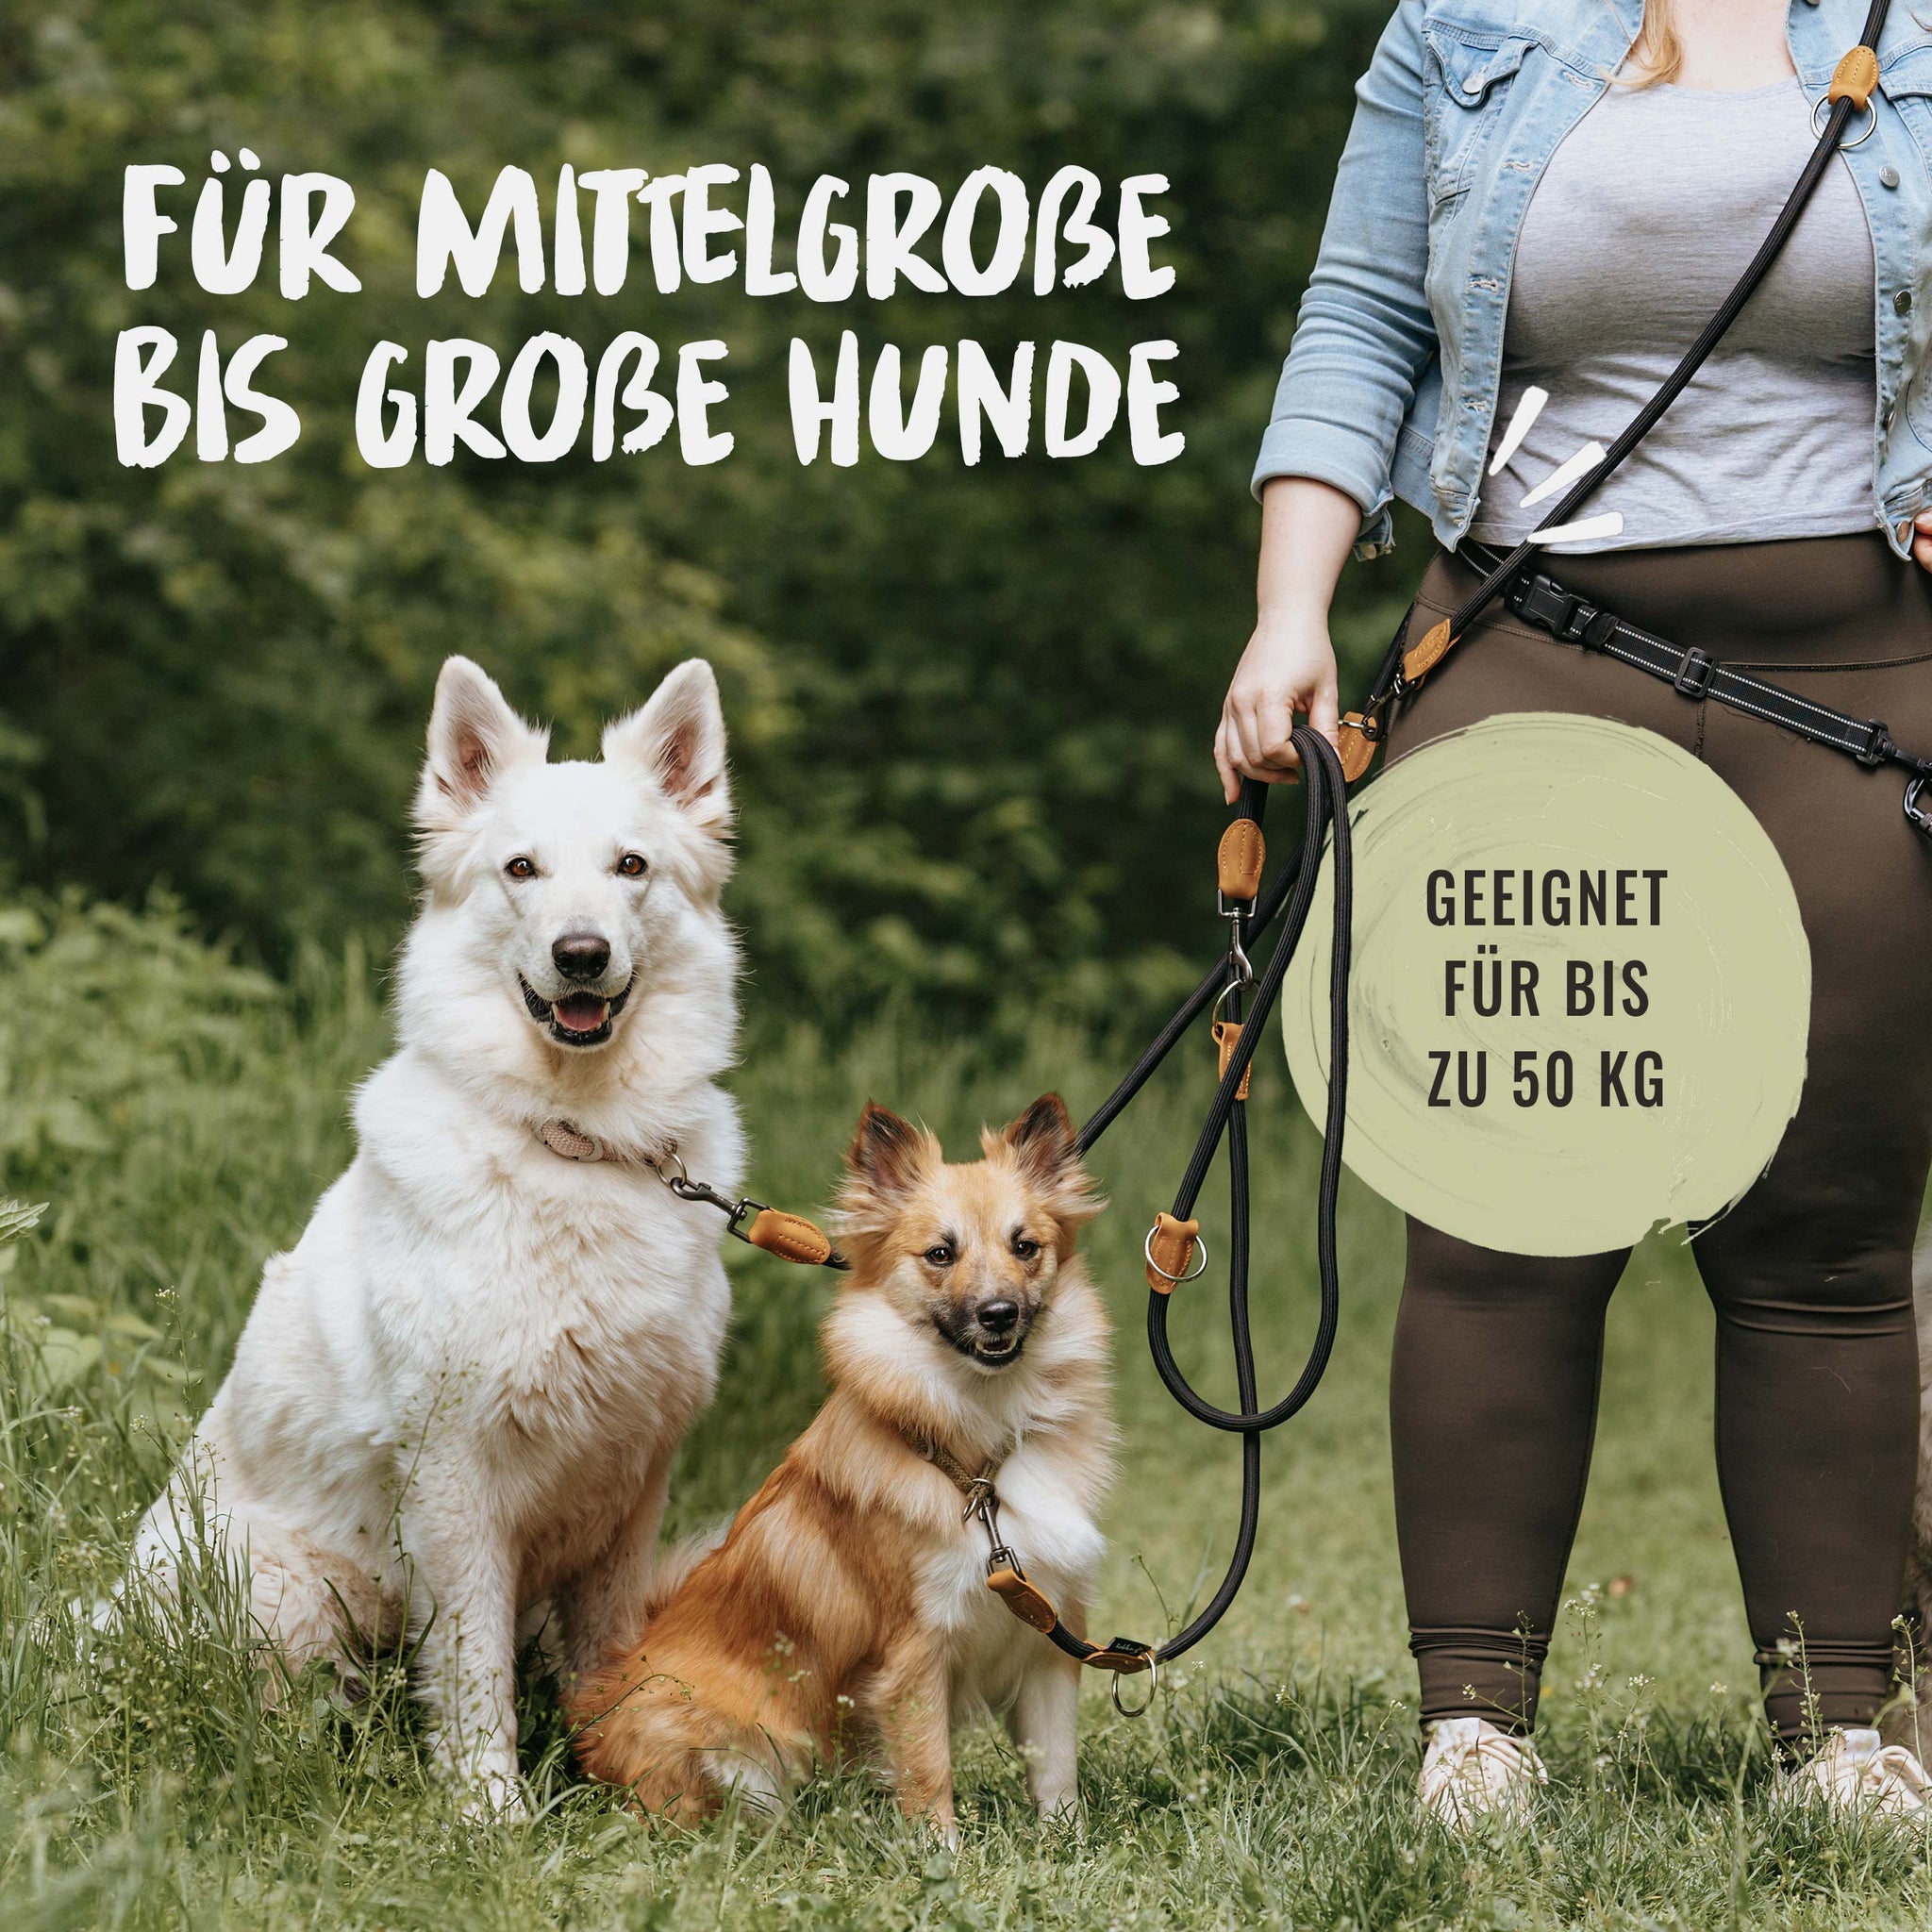 Die multifunktionale Hundeleine von Rudelkönig ist für mittelgroße bis große Hunde geeignet.